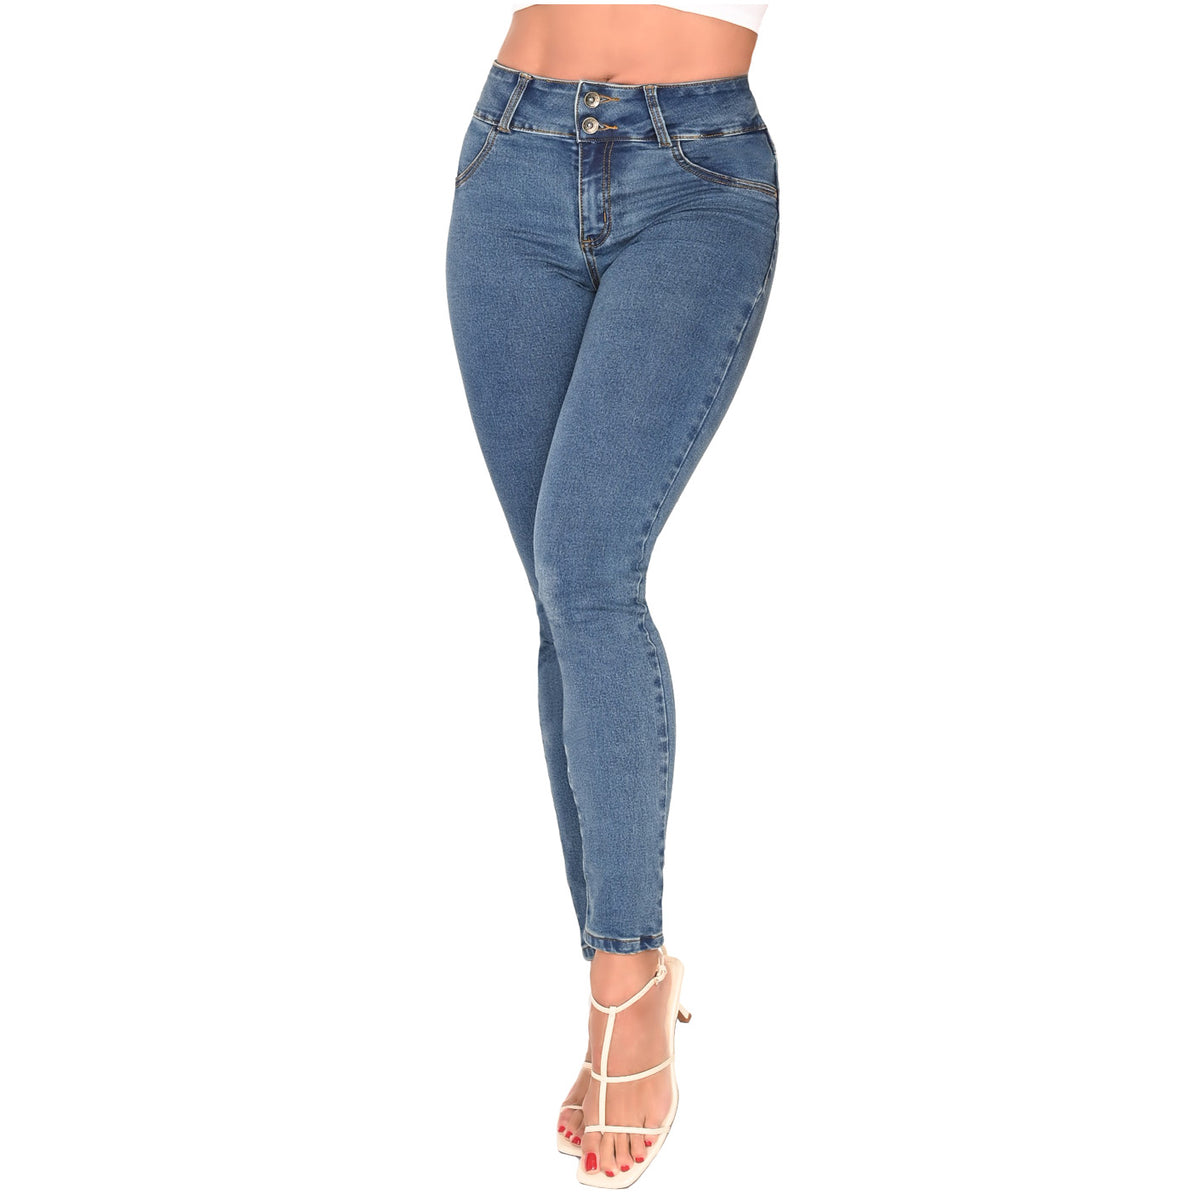 Lowla Shapewear 217988 | Butt Lifter Jeans Padded Bum Pants – Shapes ...